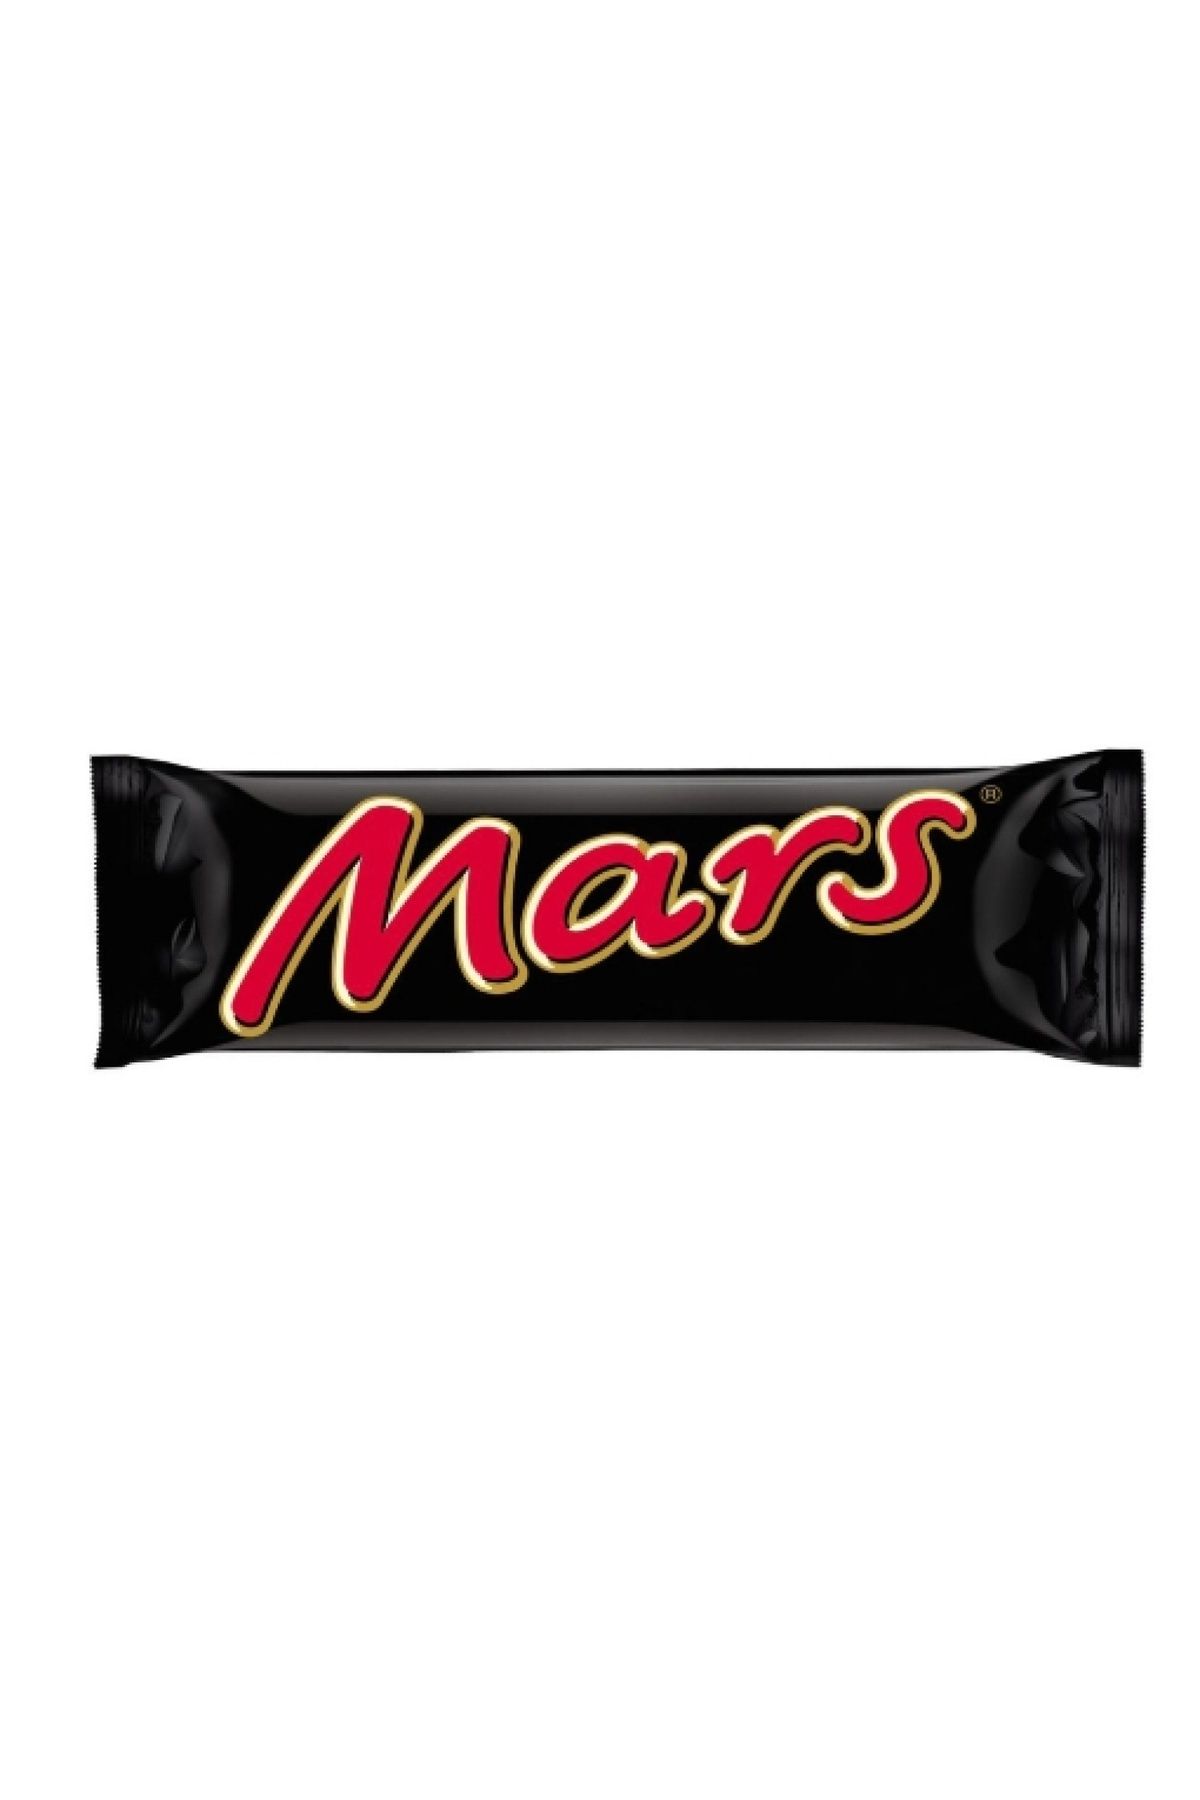 Mars Çikolata Bar 51 gr 24 Adet